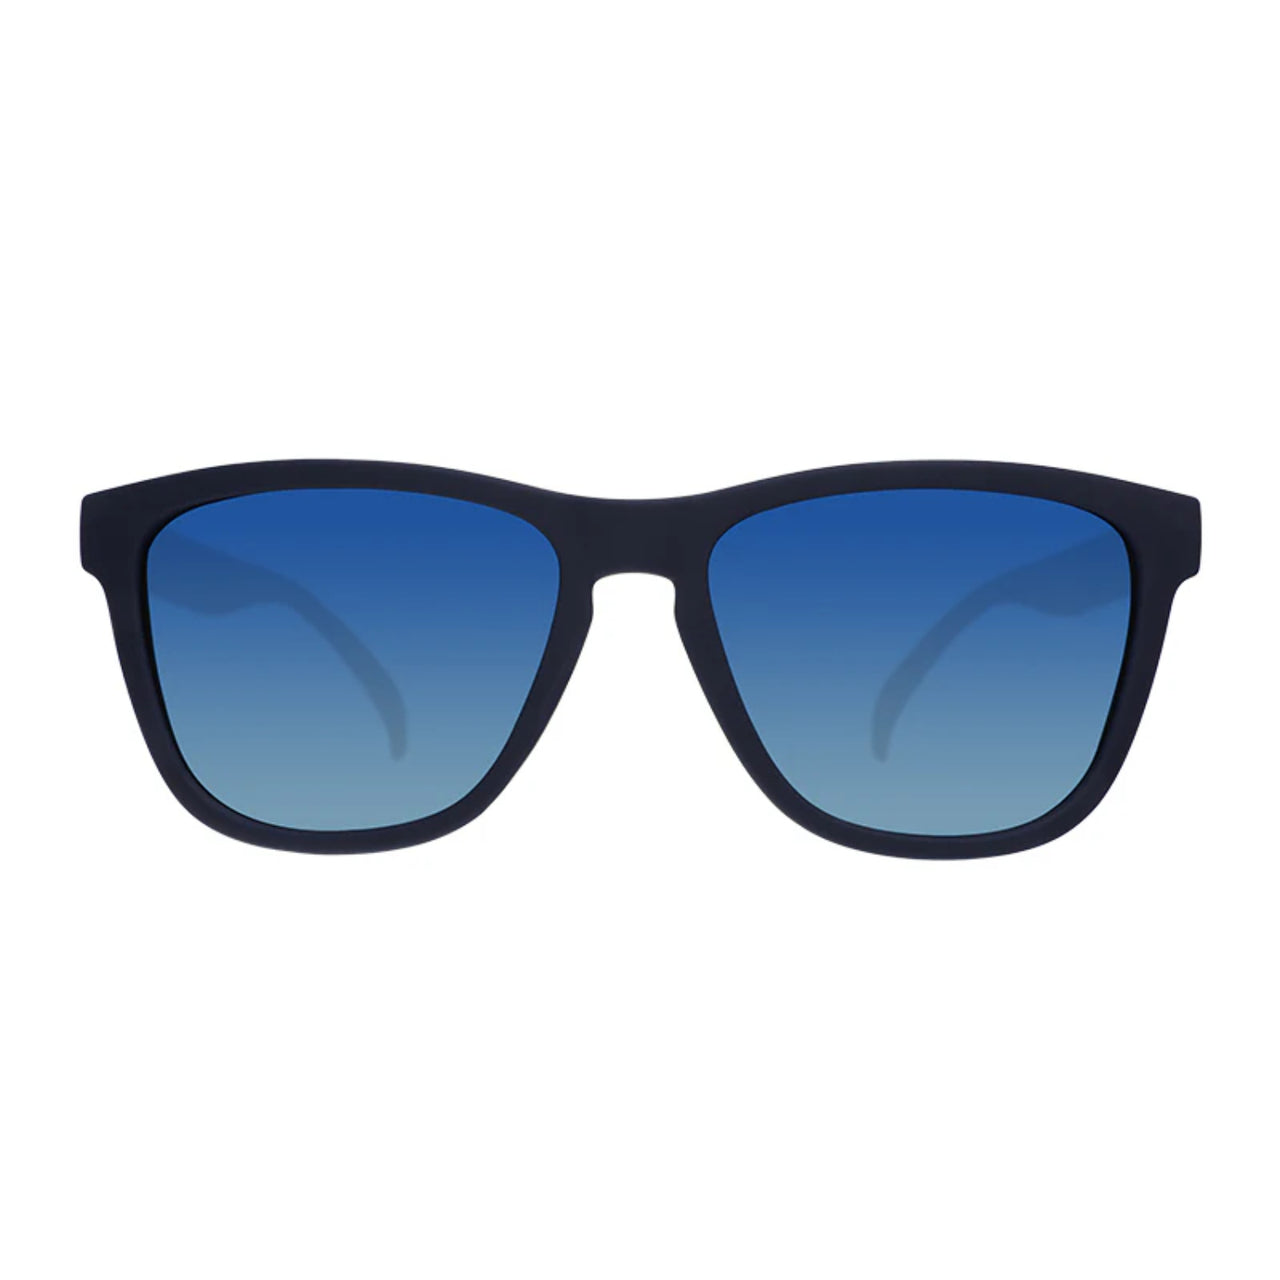 OG Sunglasses | Drinks Seawater, Sees Future